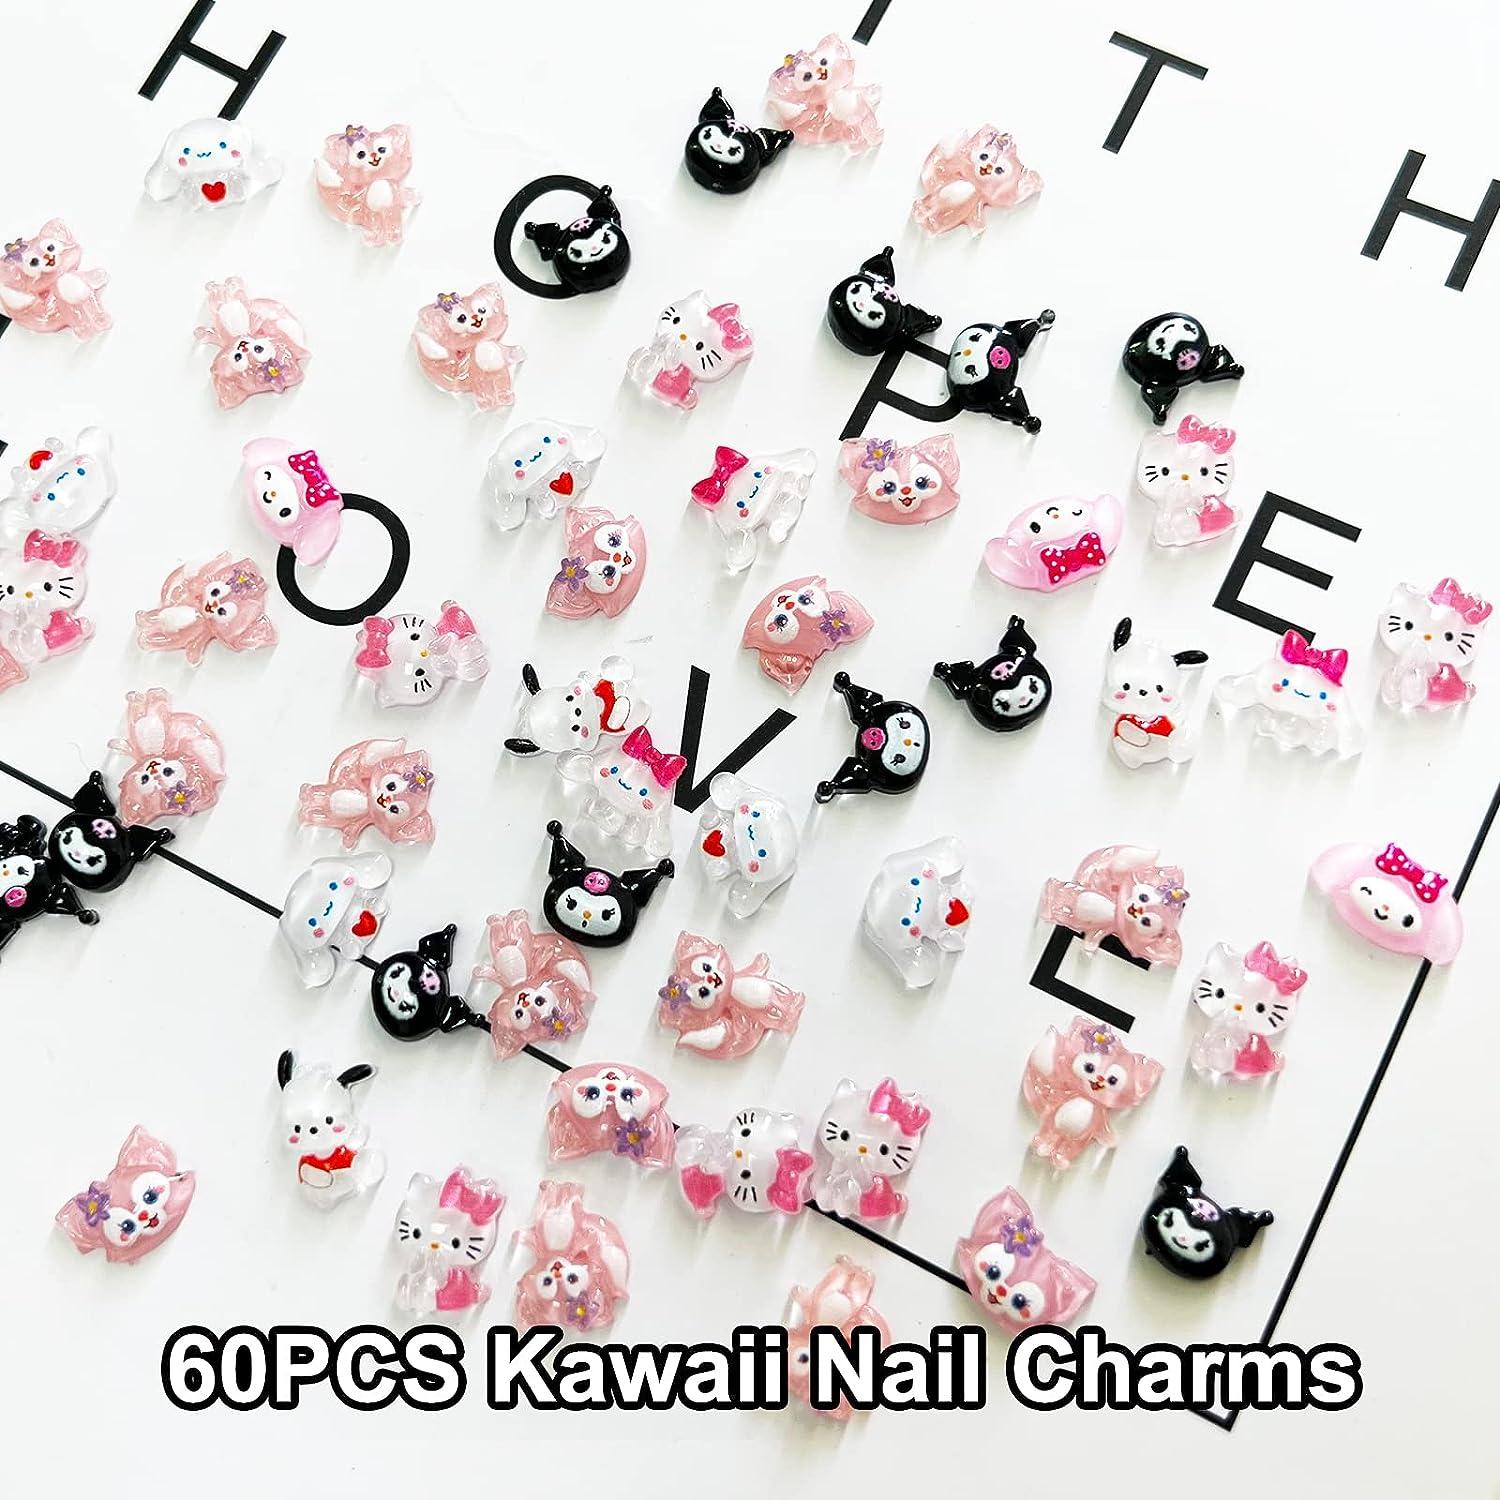 3D Kawaii Charms 4pcs